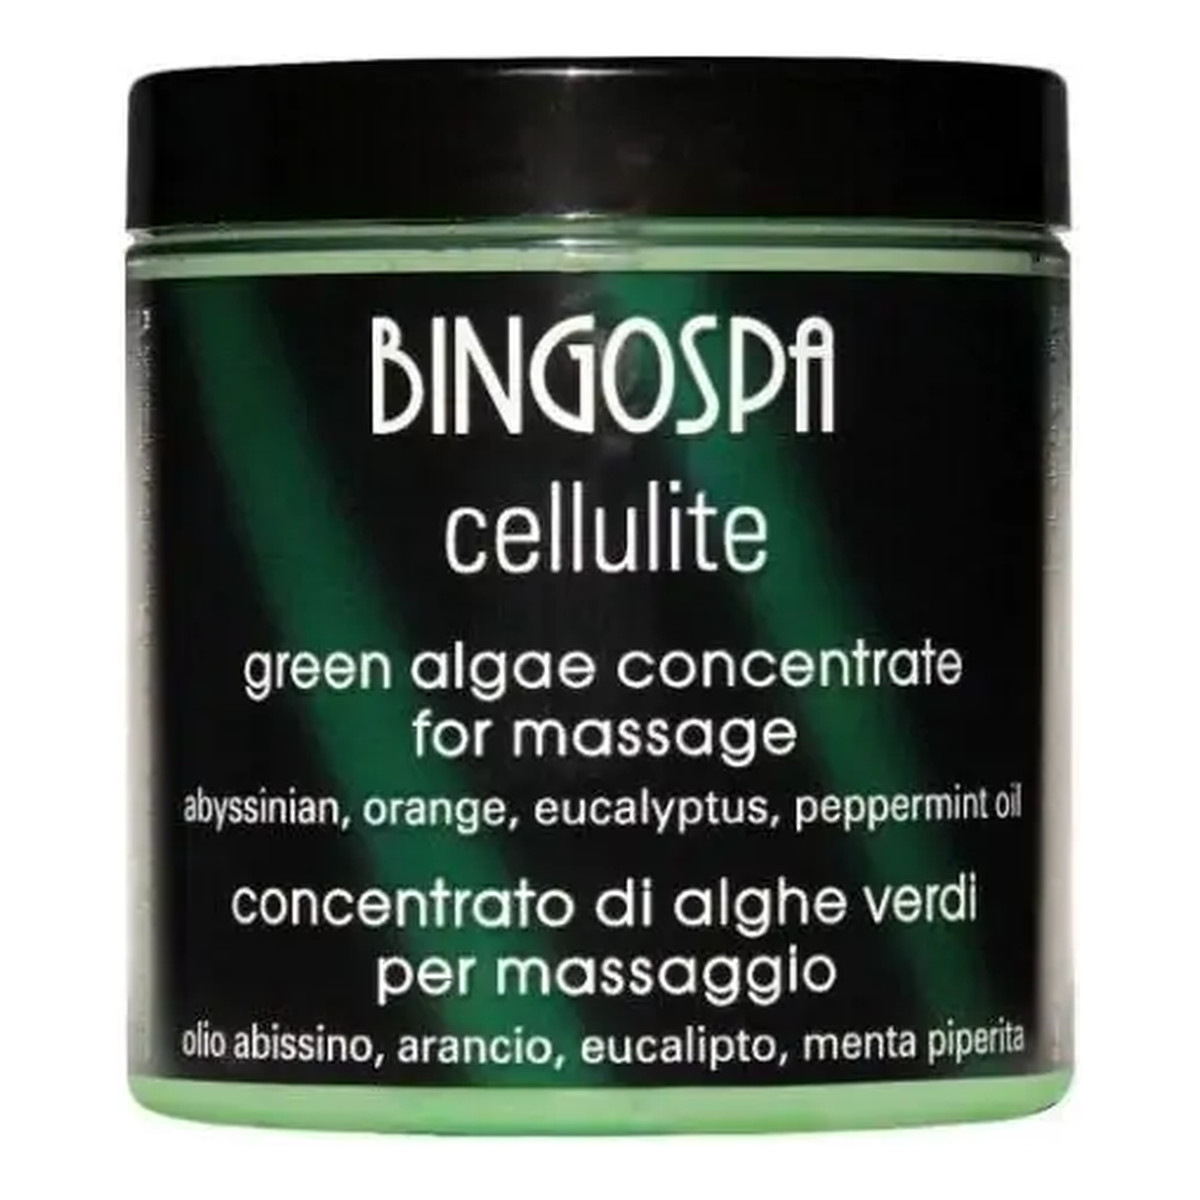 BingoSpa Cellulite Koncentrat alg zielonych do masażu z olejem abisyńskim, pomarańczowym, eukaliptusowym i miętowym 250g